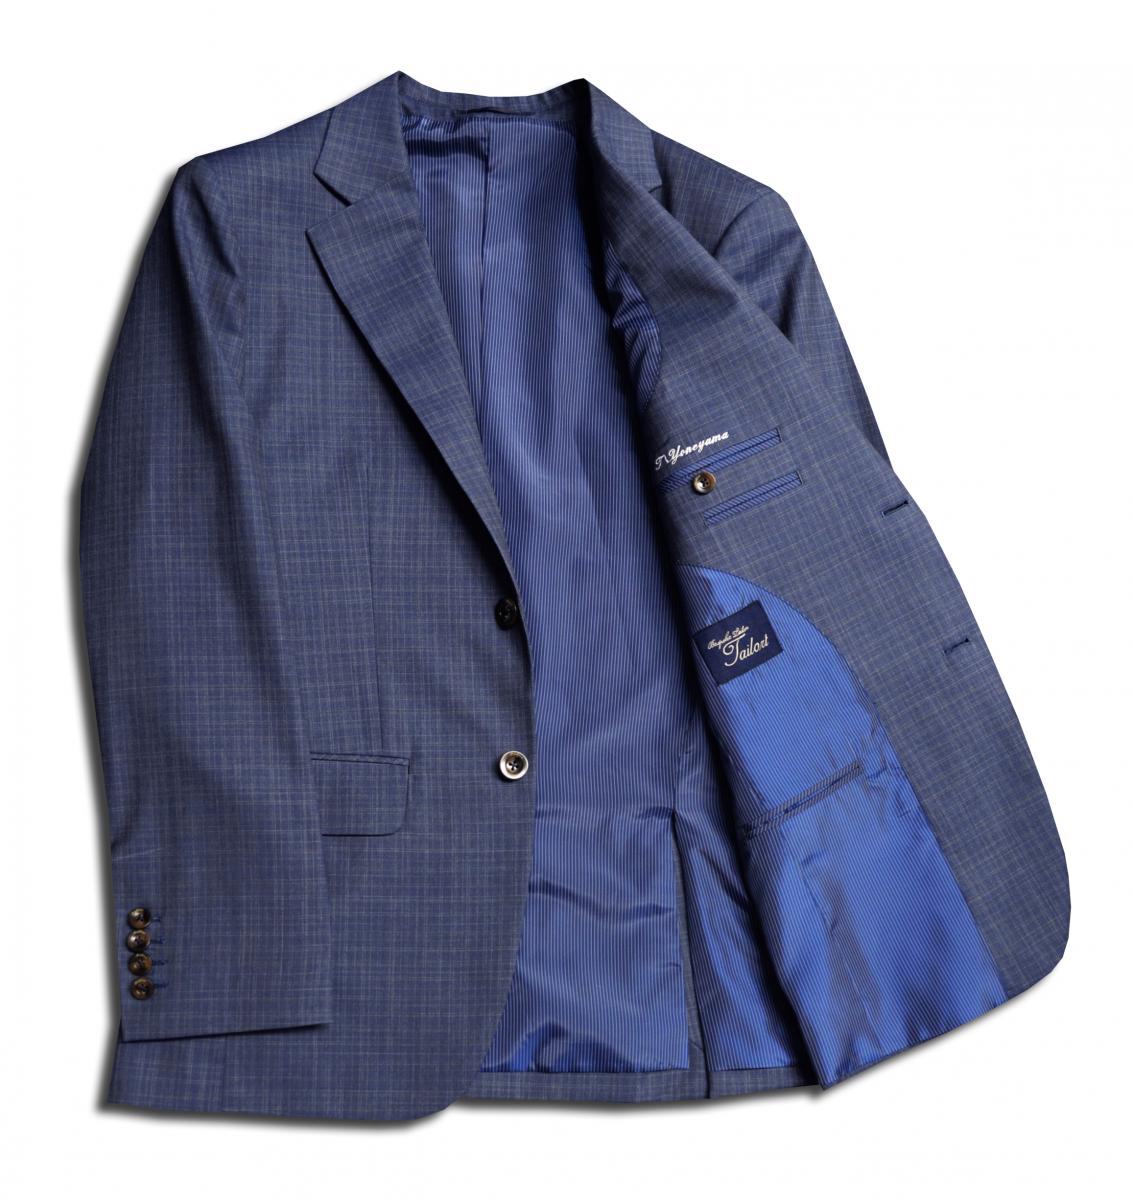 [オーダーレディーススーツ スカートセット]知的な印象のブルー×チェック柄が印象的！